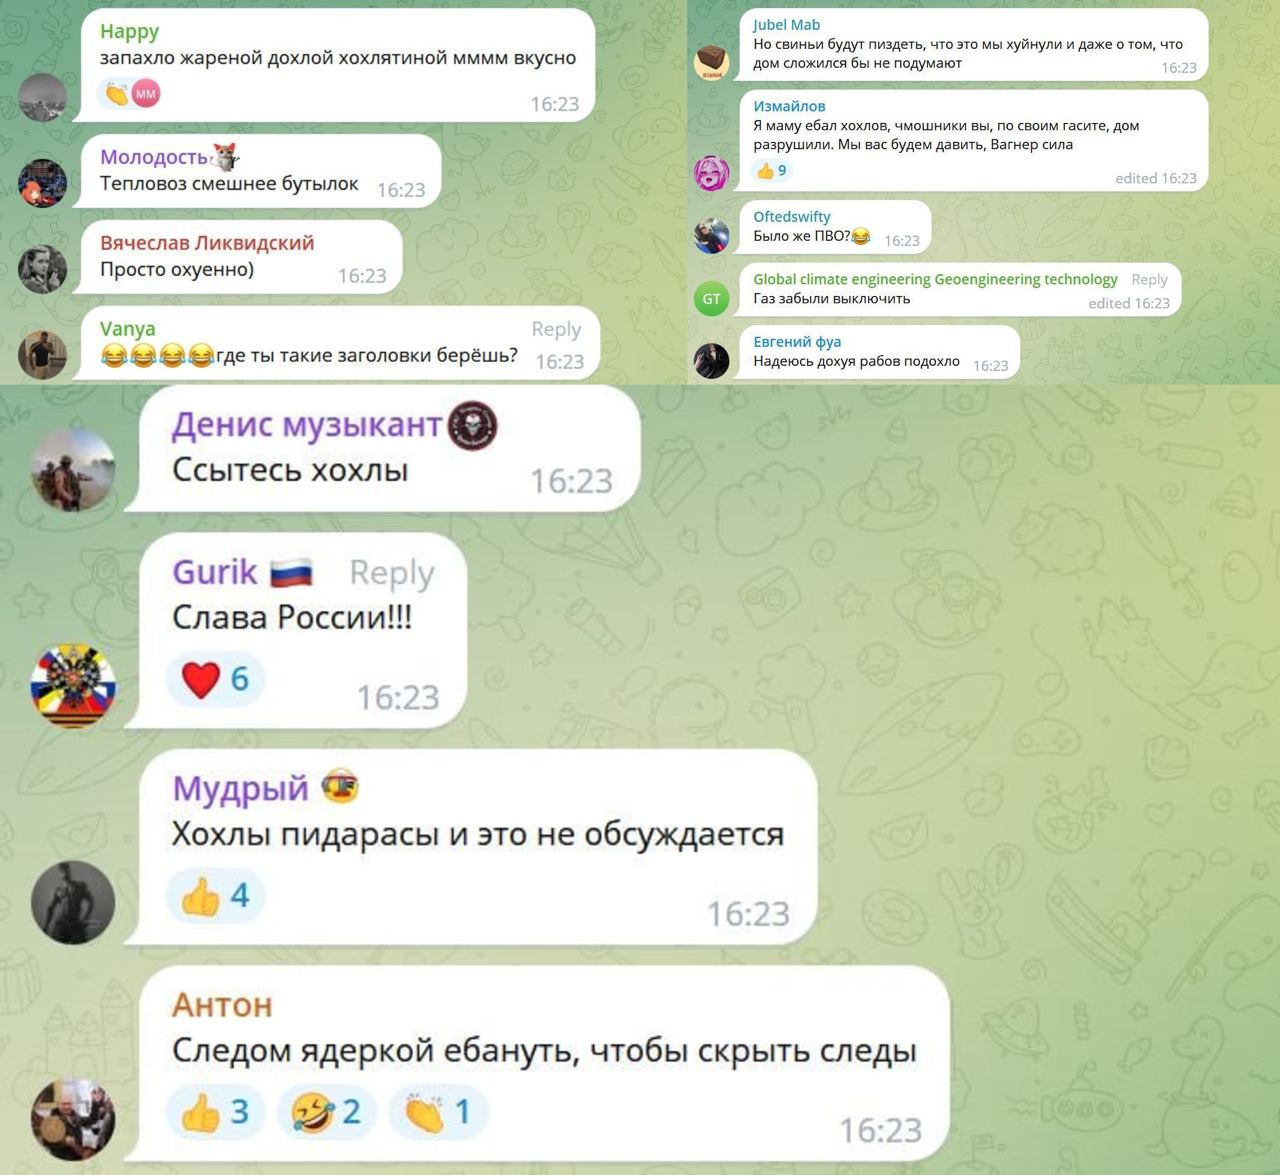 Труха телеграмм украина на русском языке смотреть онлайн бесплатно фото 22